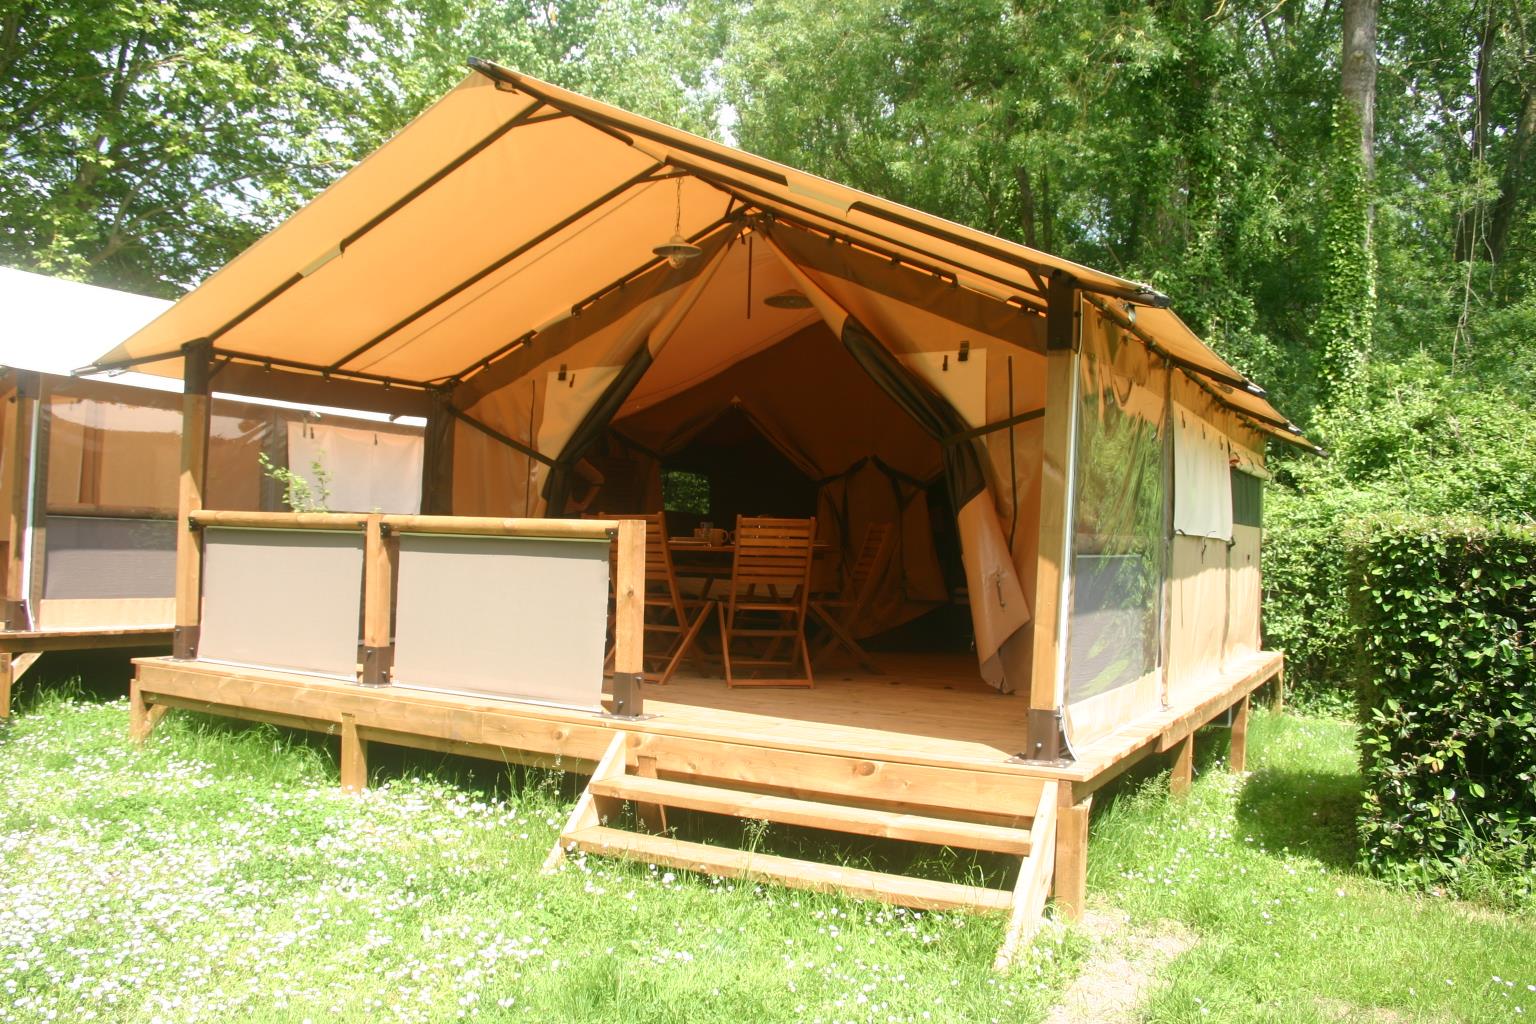 Location - Tente Lodge 30M² Sans Sanitaires + Wifi Offerte/Séjour (Pas De Télévision) - Pas D'animaux - Camping Val de Boutonne